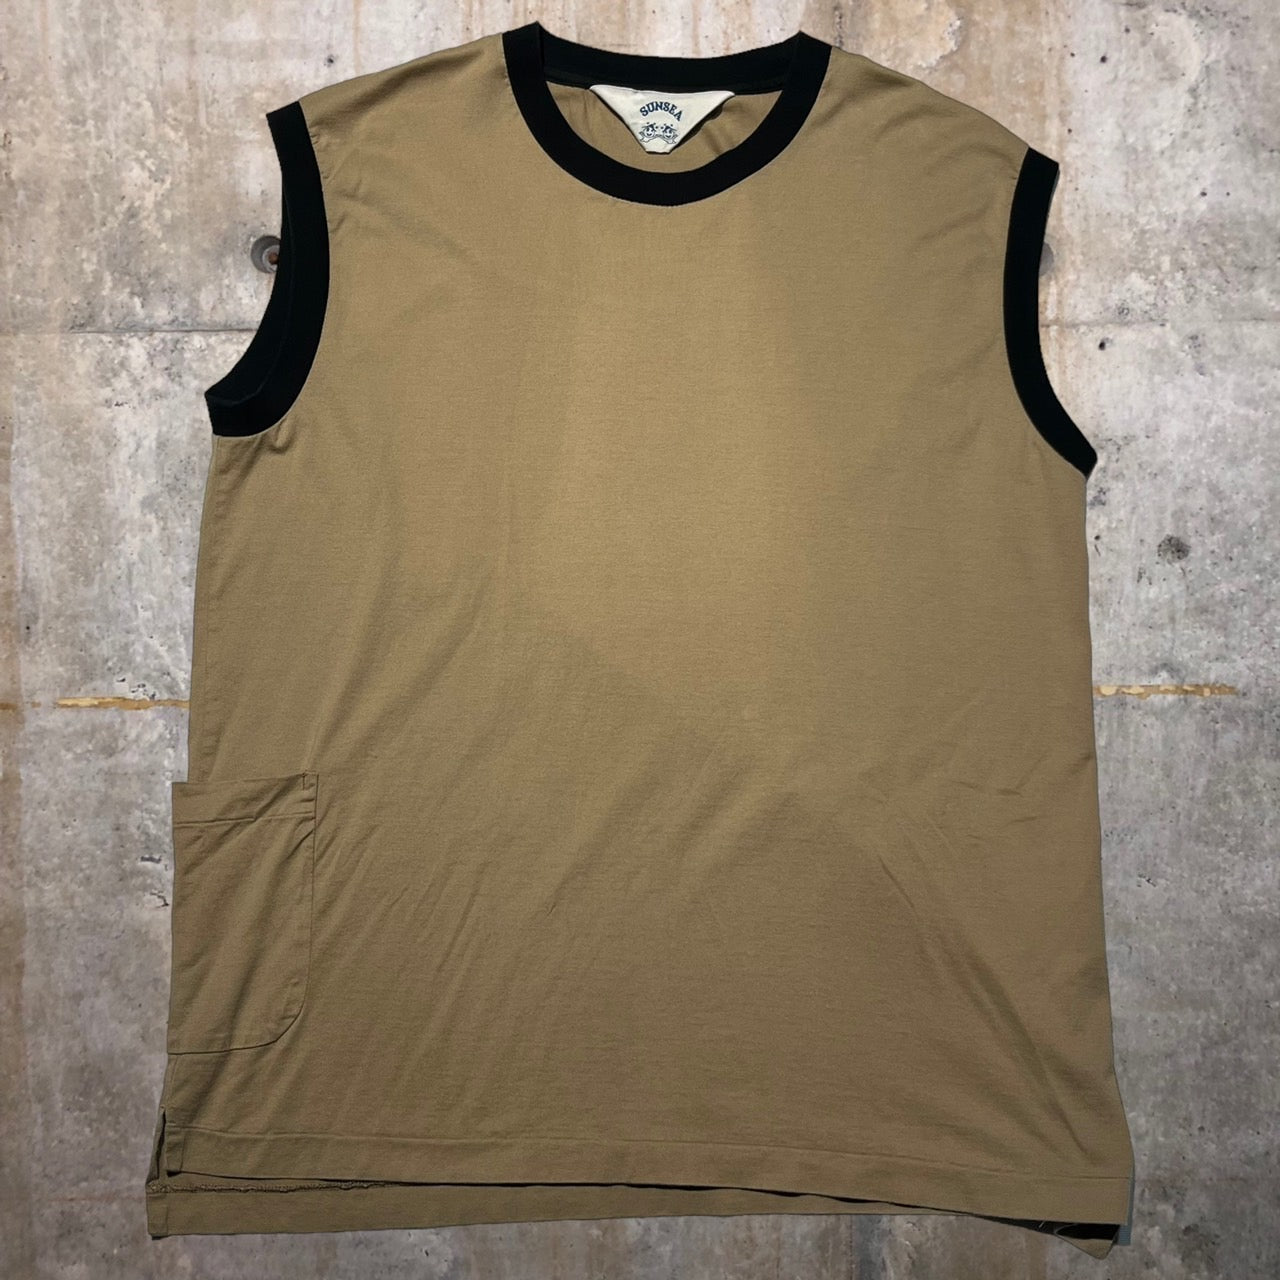 SUNSEA(サンシー) 18SSバイカラーノースリーブTシャツ 18S05 3(Lサイズ程度) ベージュ